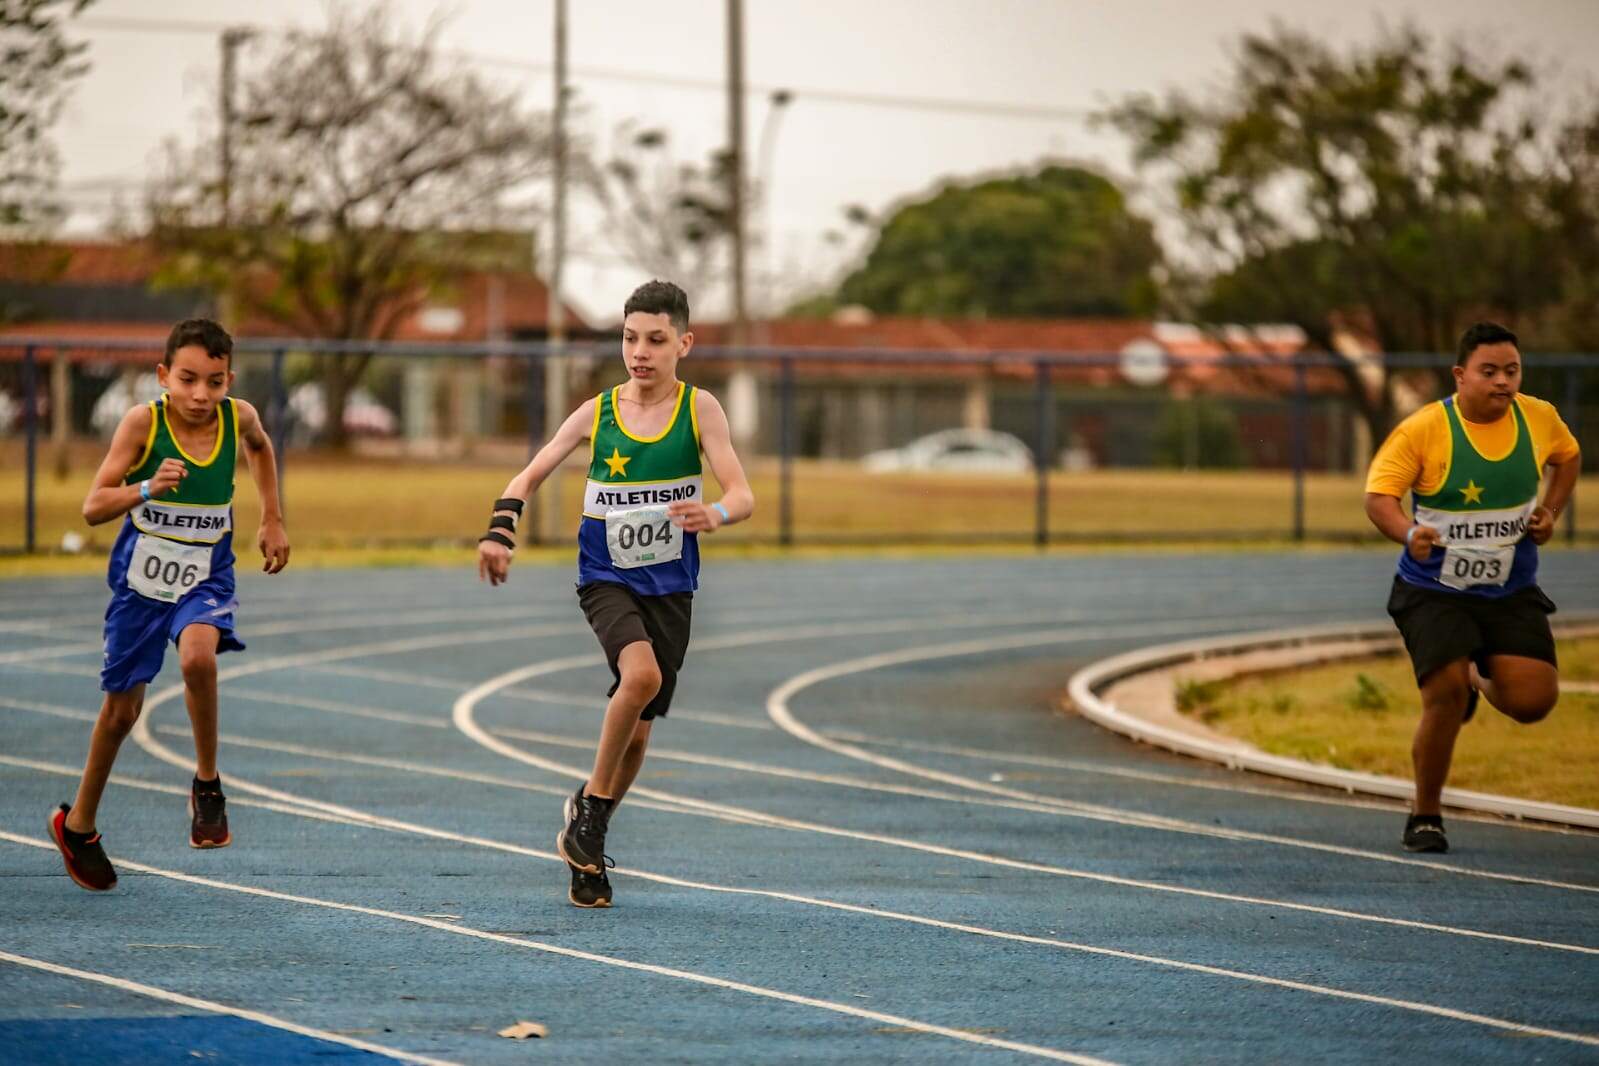 Ao centro, João correndo na pista de atletismo (Foto: Marcos Ermínio)